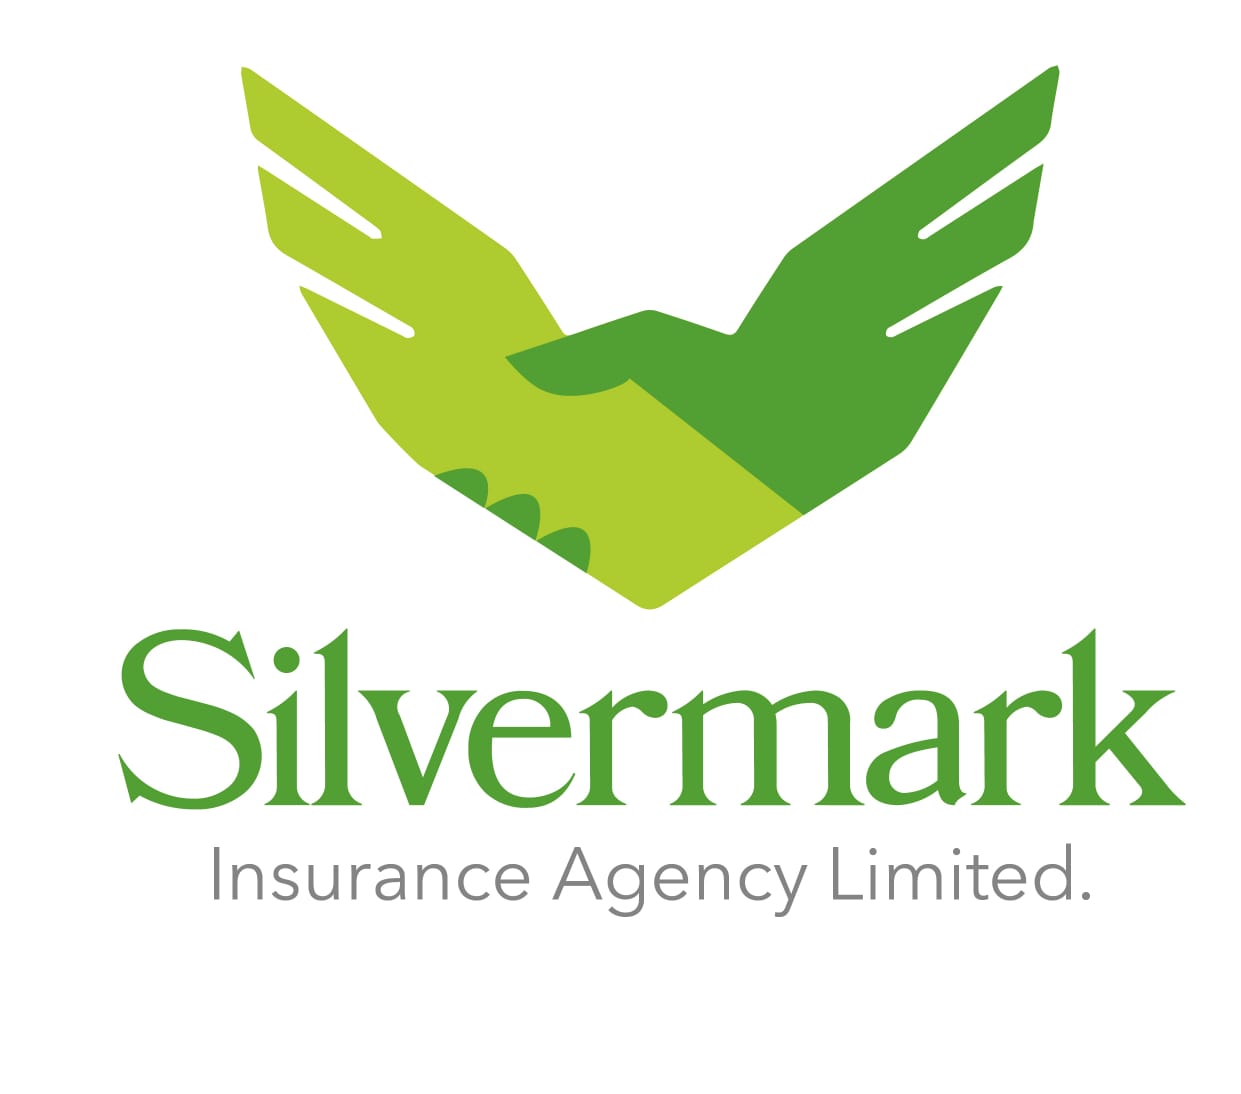 Silvermark Insurance Agency